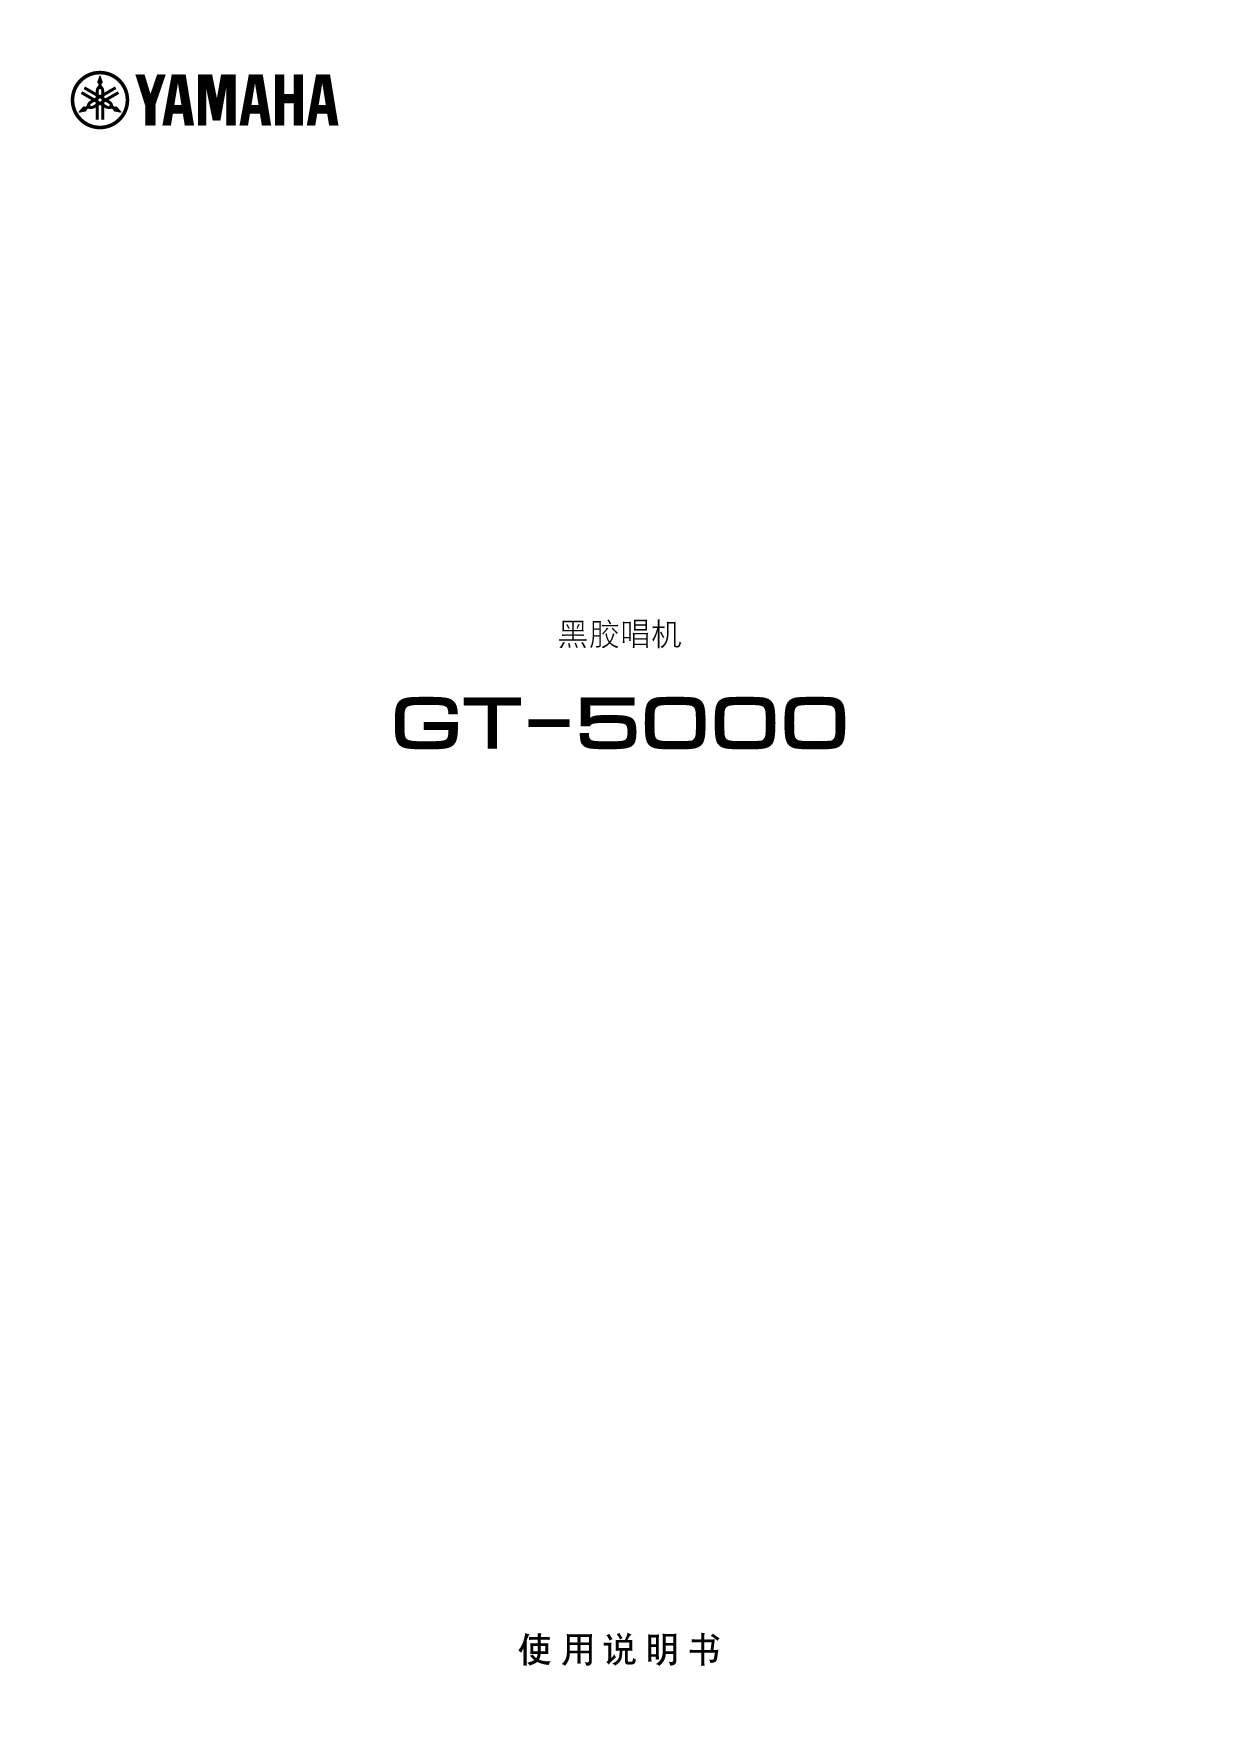 雅马哈 Yamaha GT-5000 使用说明书 封面